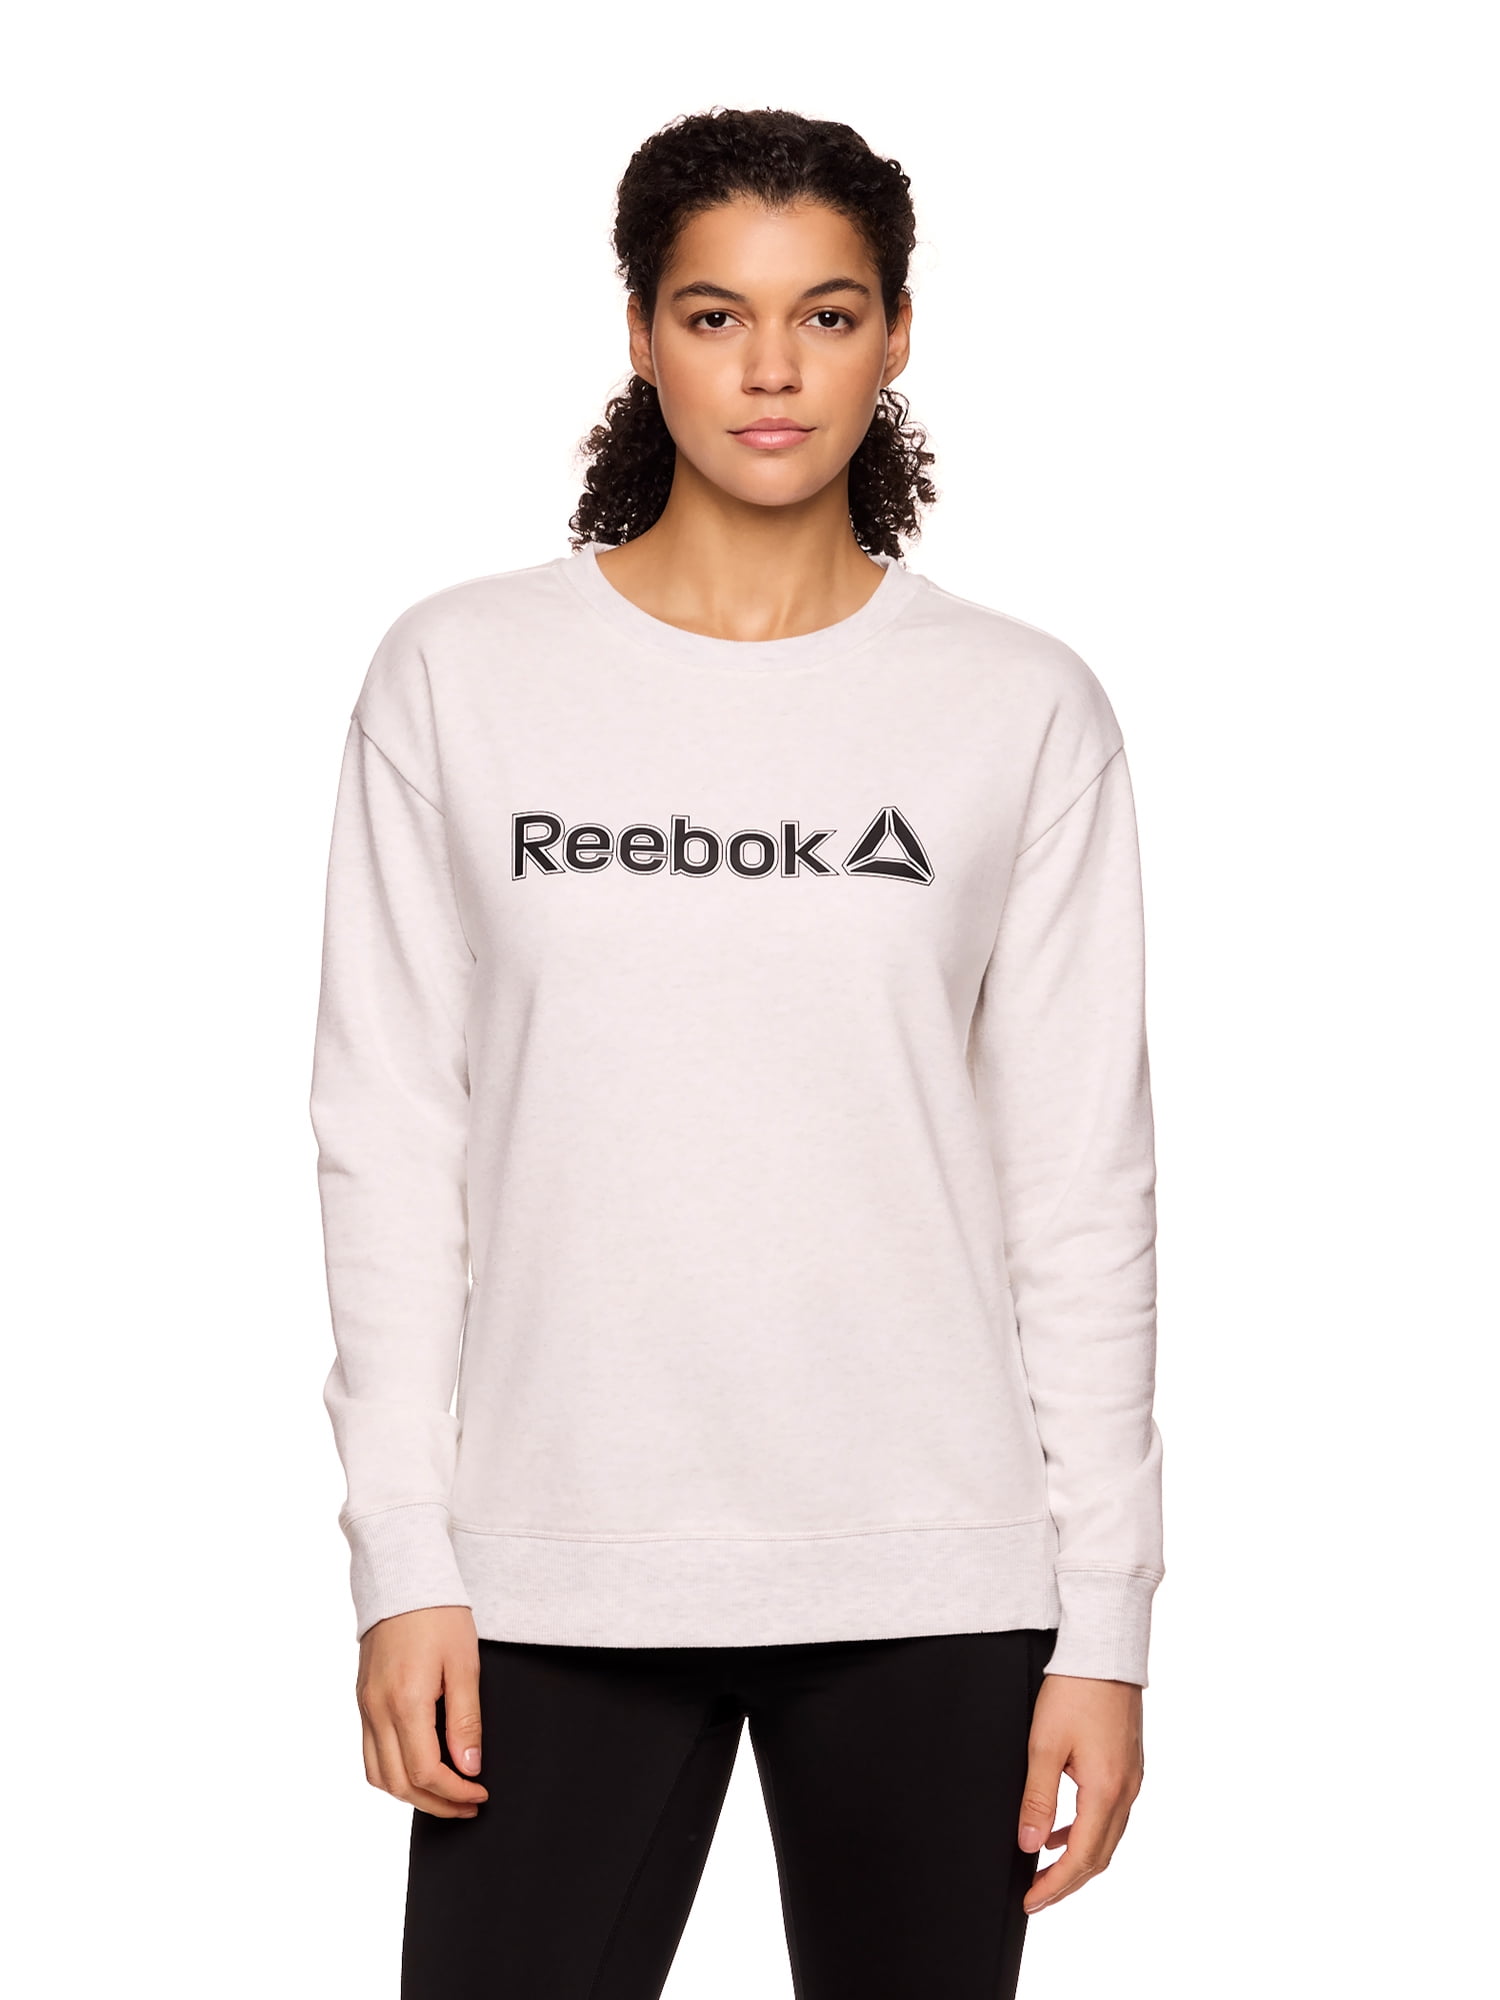 Reebok Women’s Branded Graphic Crewneck with Side Zipper, Sizes XS-XXXL ...